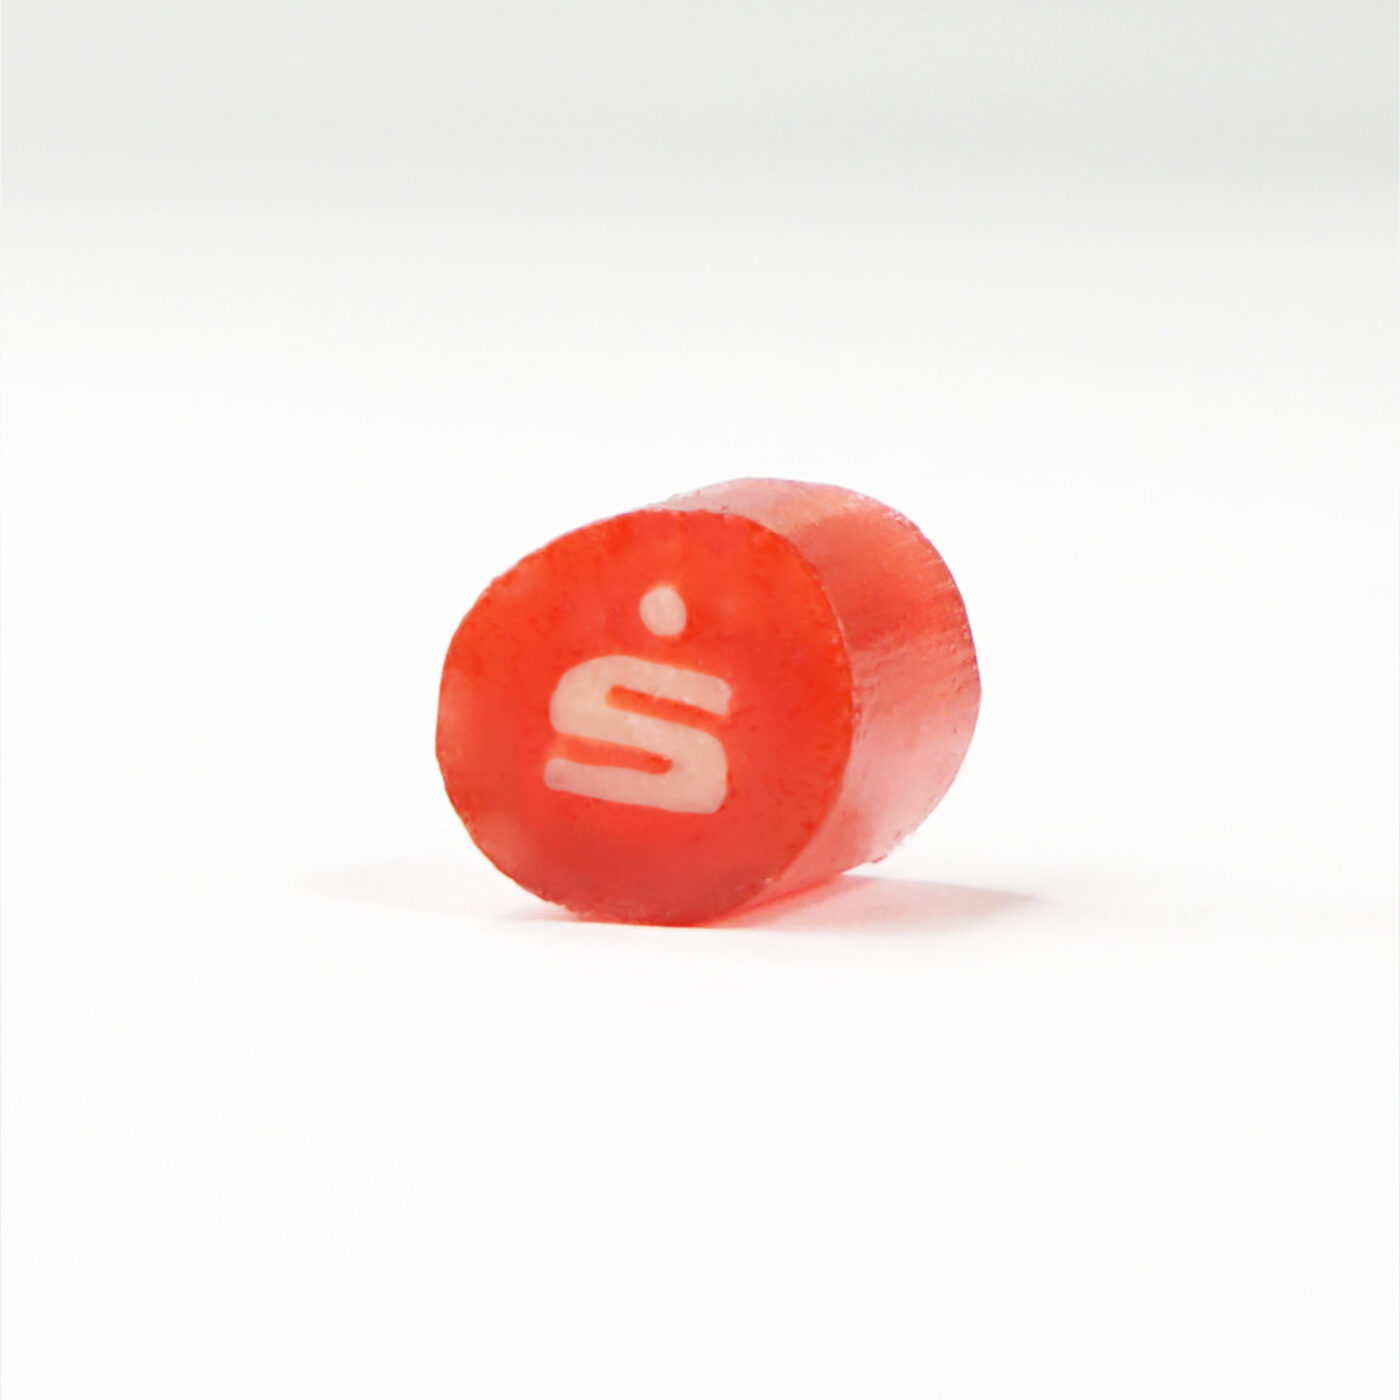 Ein rotes Bonbon mit dem Sparkassen-Logo